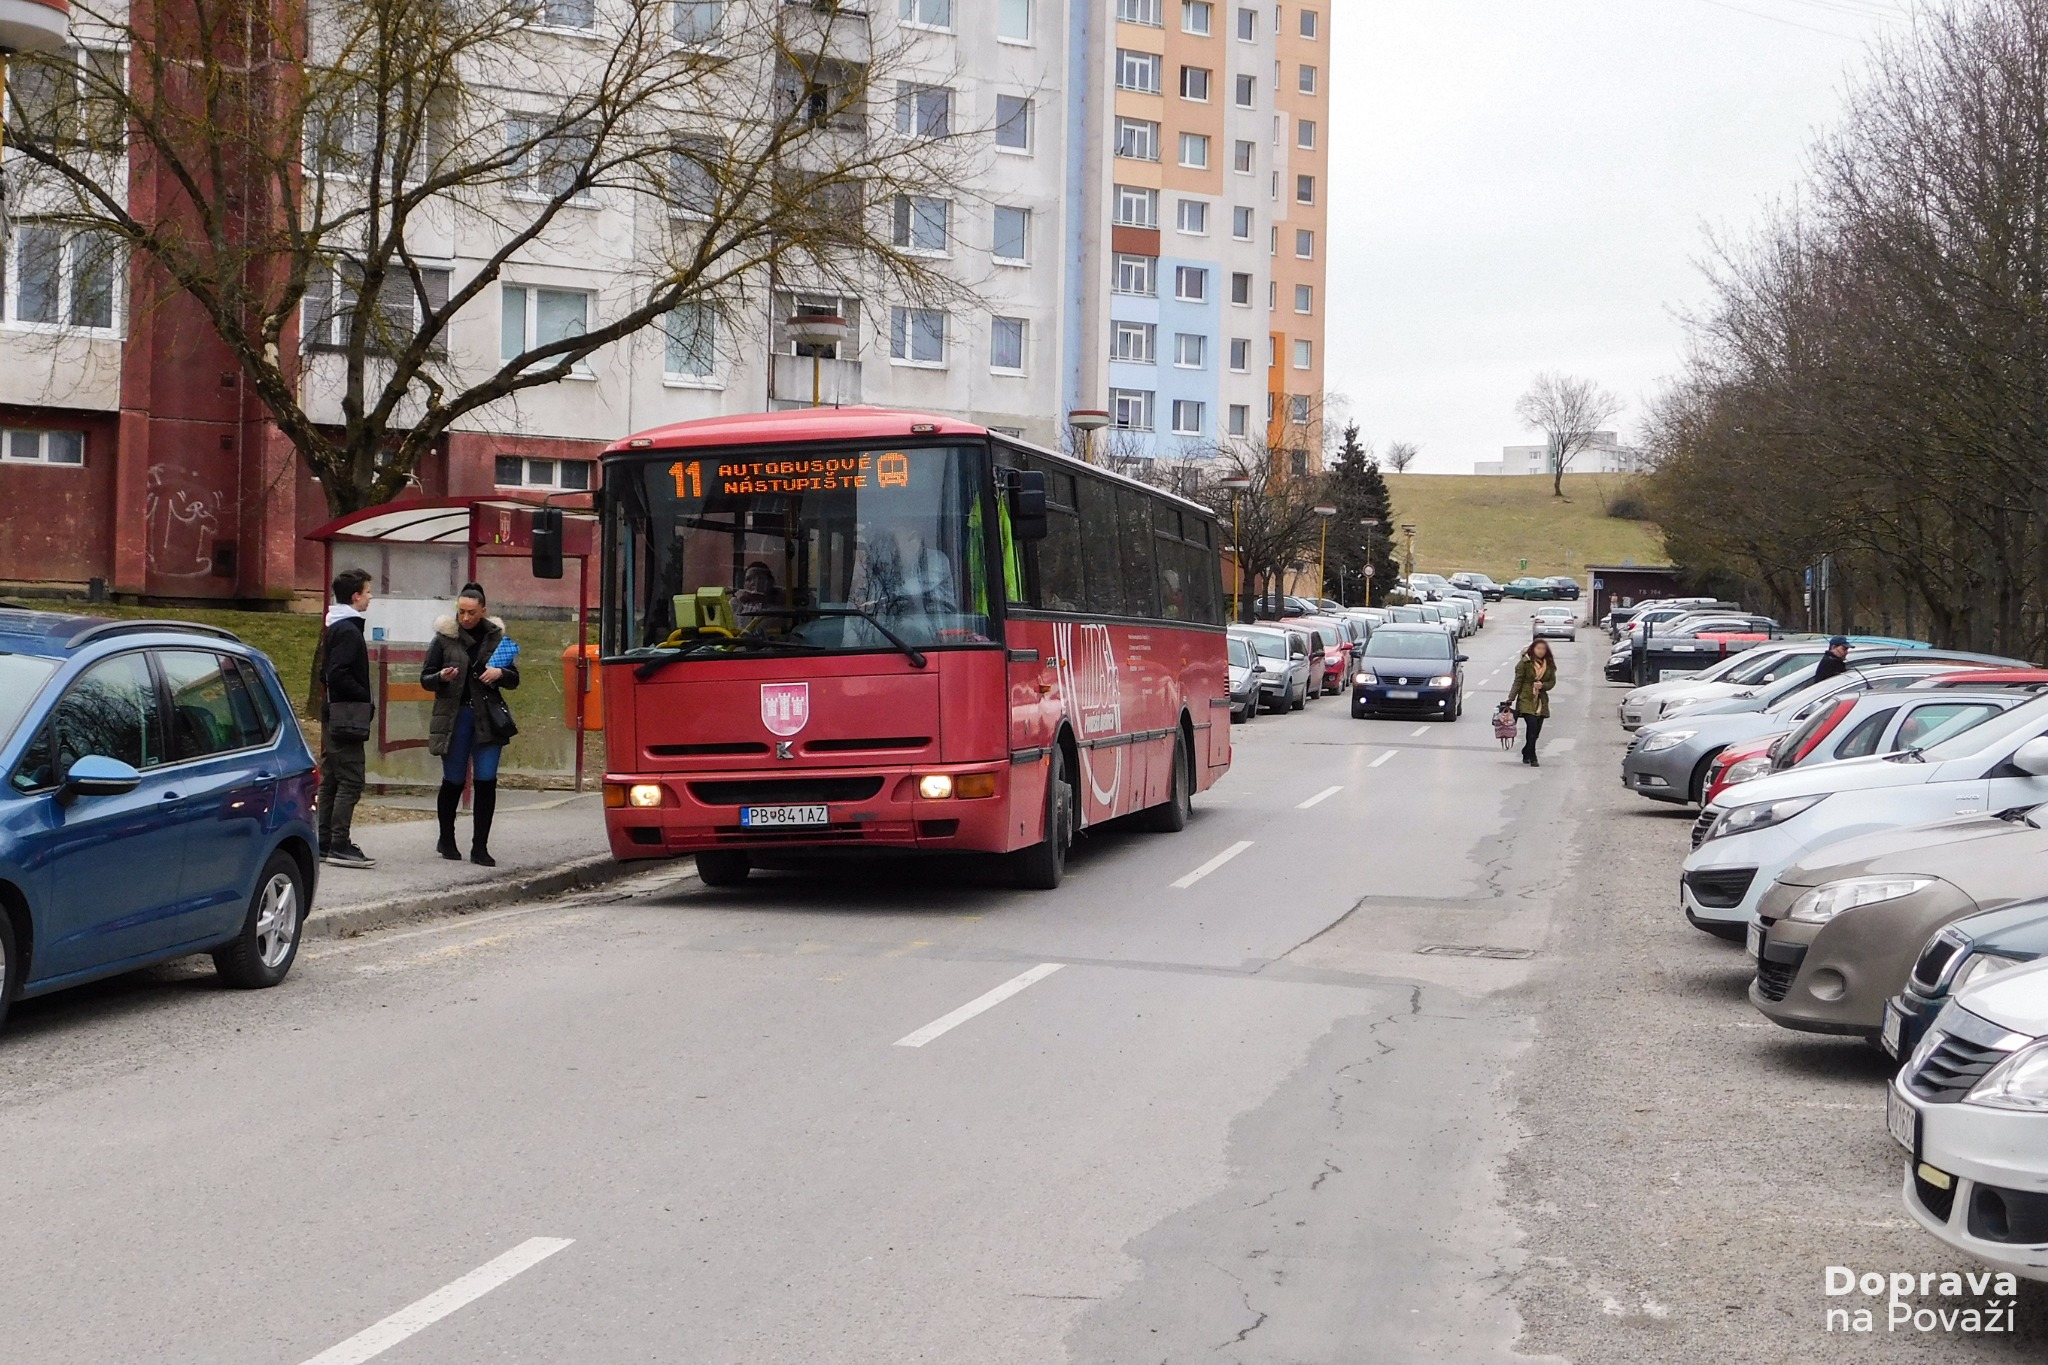 Ľudia MHD necestujú, tvrdí mesto. Považská Bystrica obmedzila verejnú dopravu